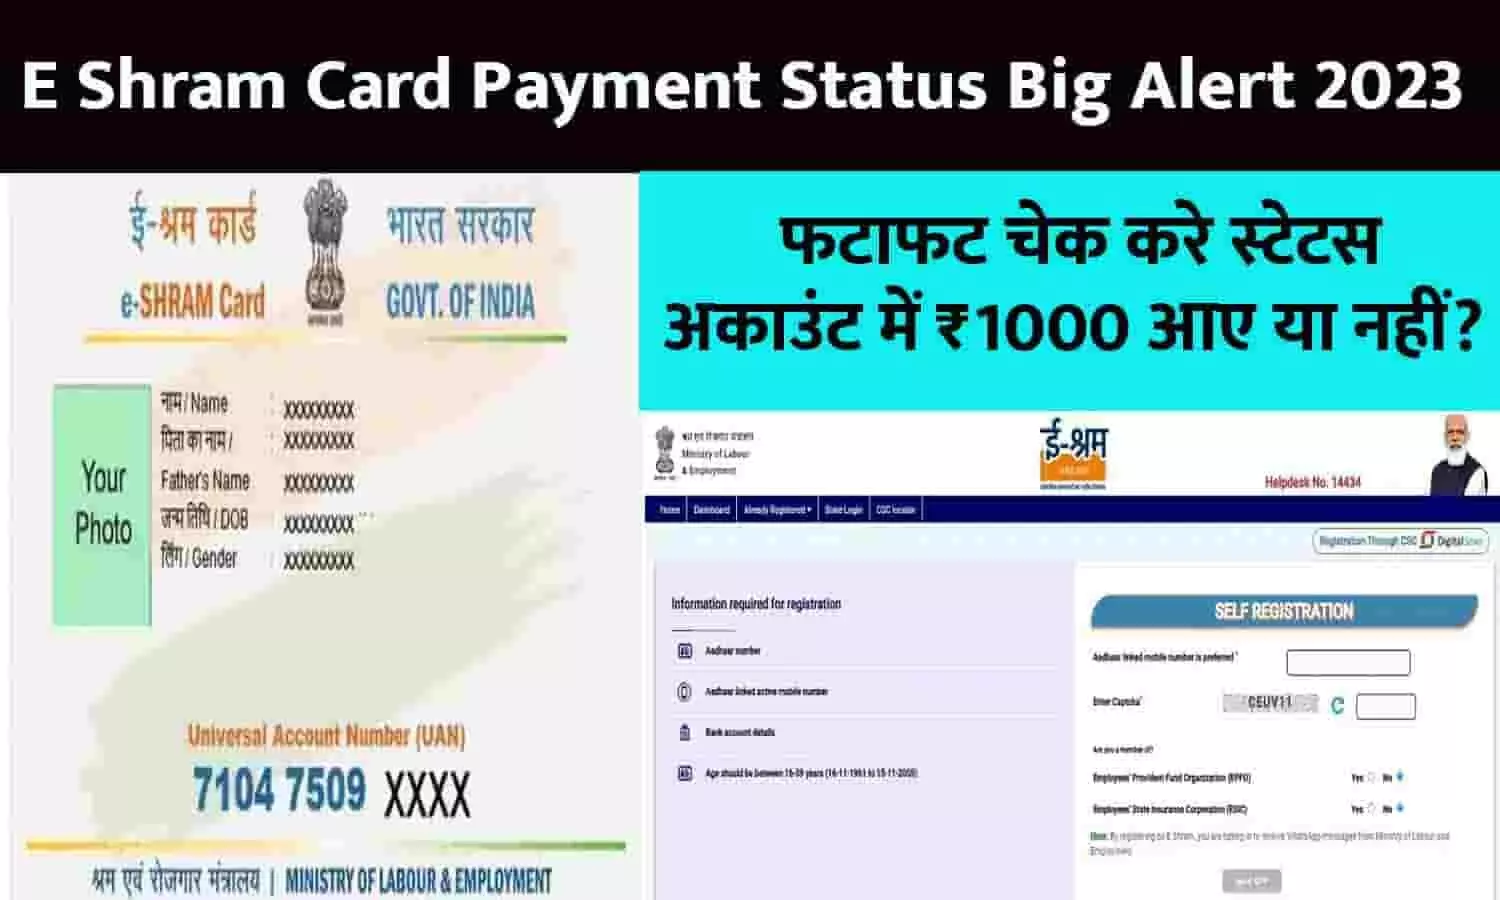 E Shram Card Payment Status Big Alert 2023: फटाफट चेक करे स्टेटस, अकाउंट में ₹1000 आए या नहीं?